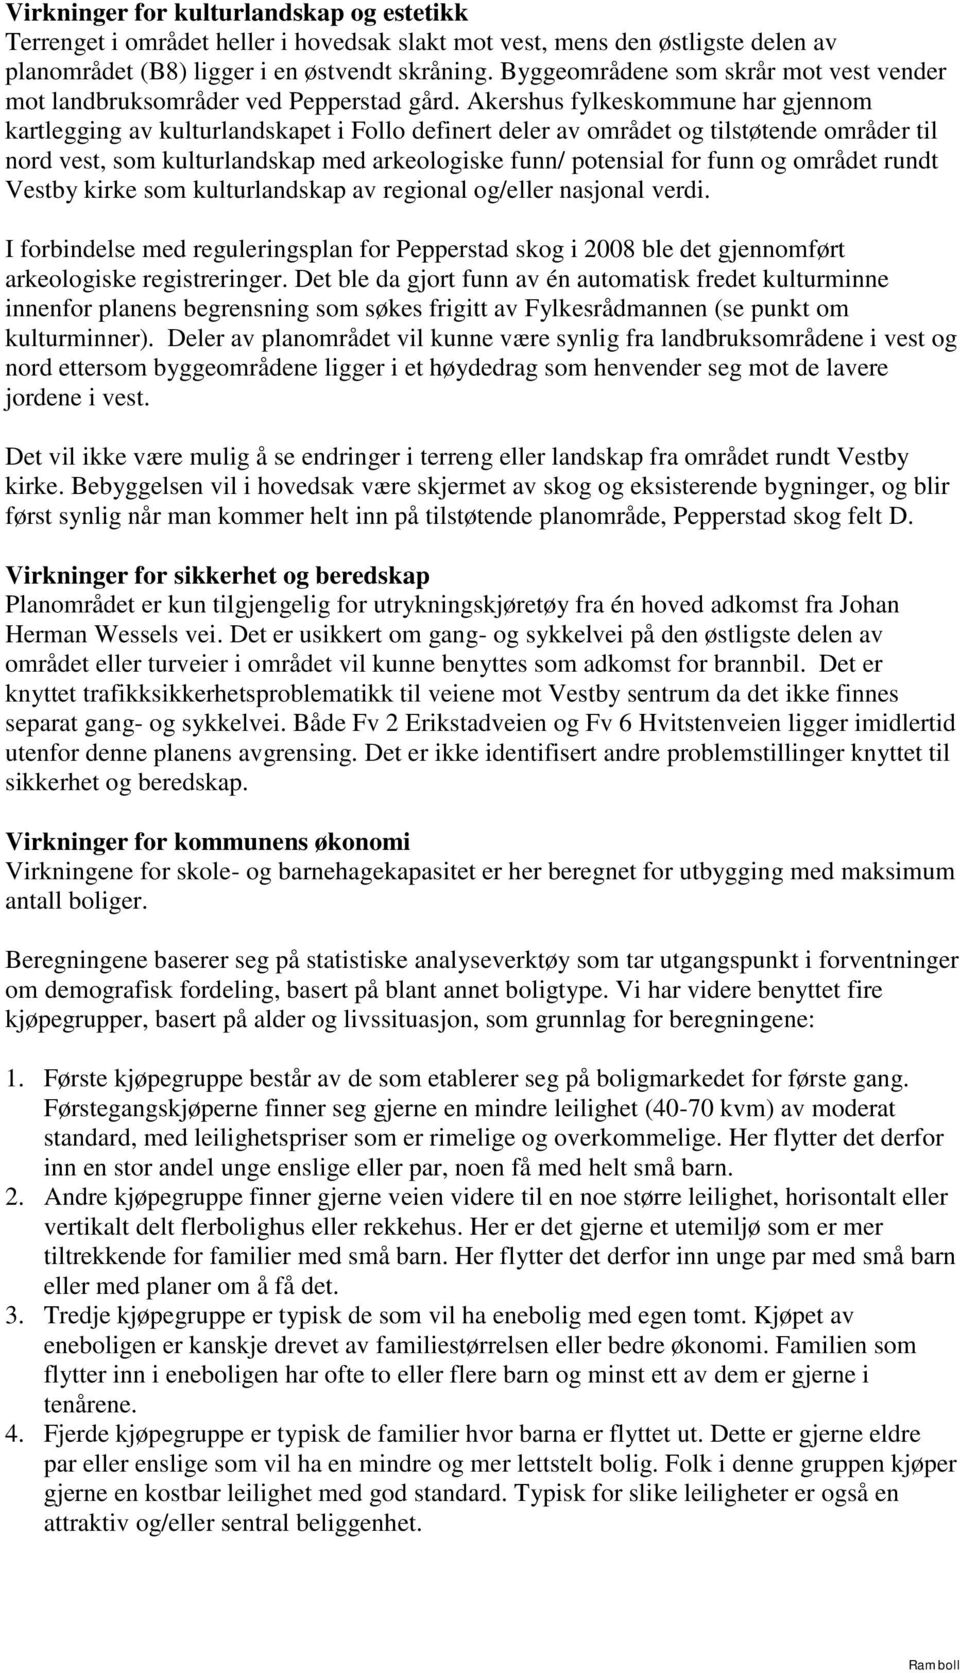 Akershus fylkeskommune har gjennom kartlegging av kulturlandskapet i Follo definert deler av området og tilstøtende områder til nord vest, som kulturlandskap med arkeologiske funn/ potensial for funn